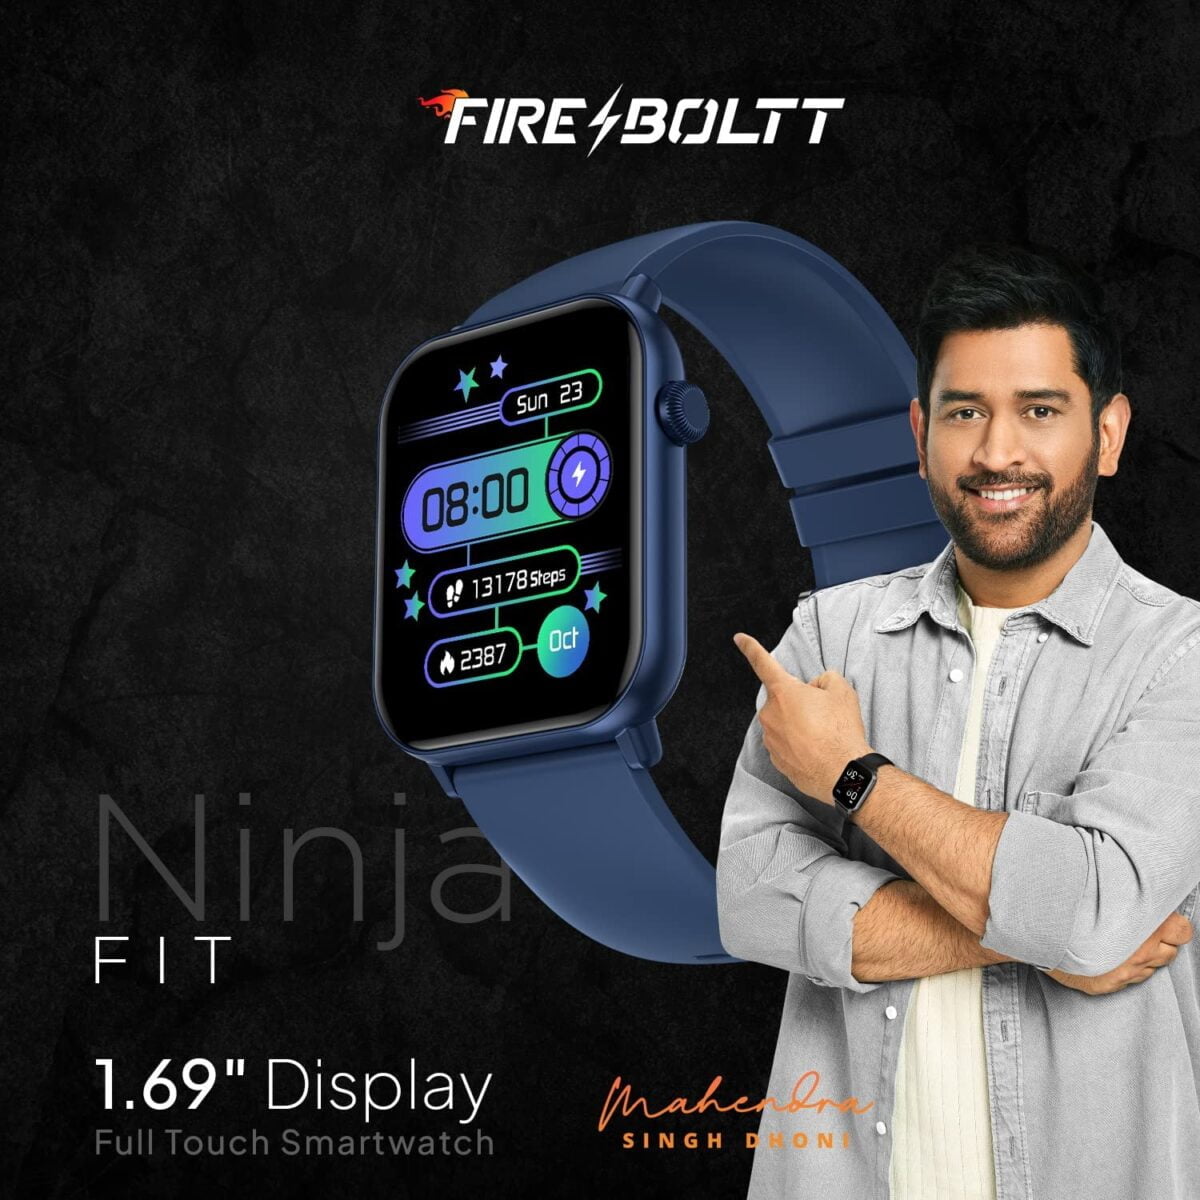 Fire boltt ninja fit smartwatch blue 2 fire-boltt ninja fit smartwatch